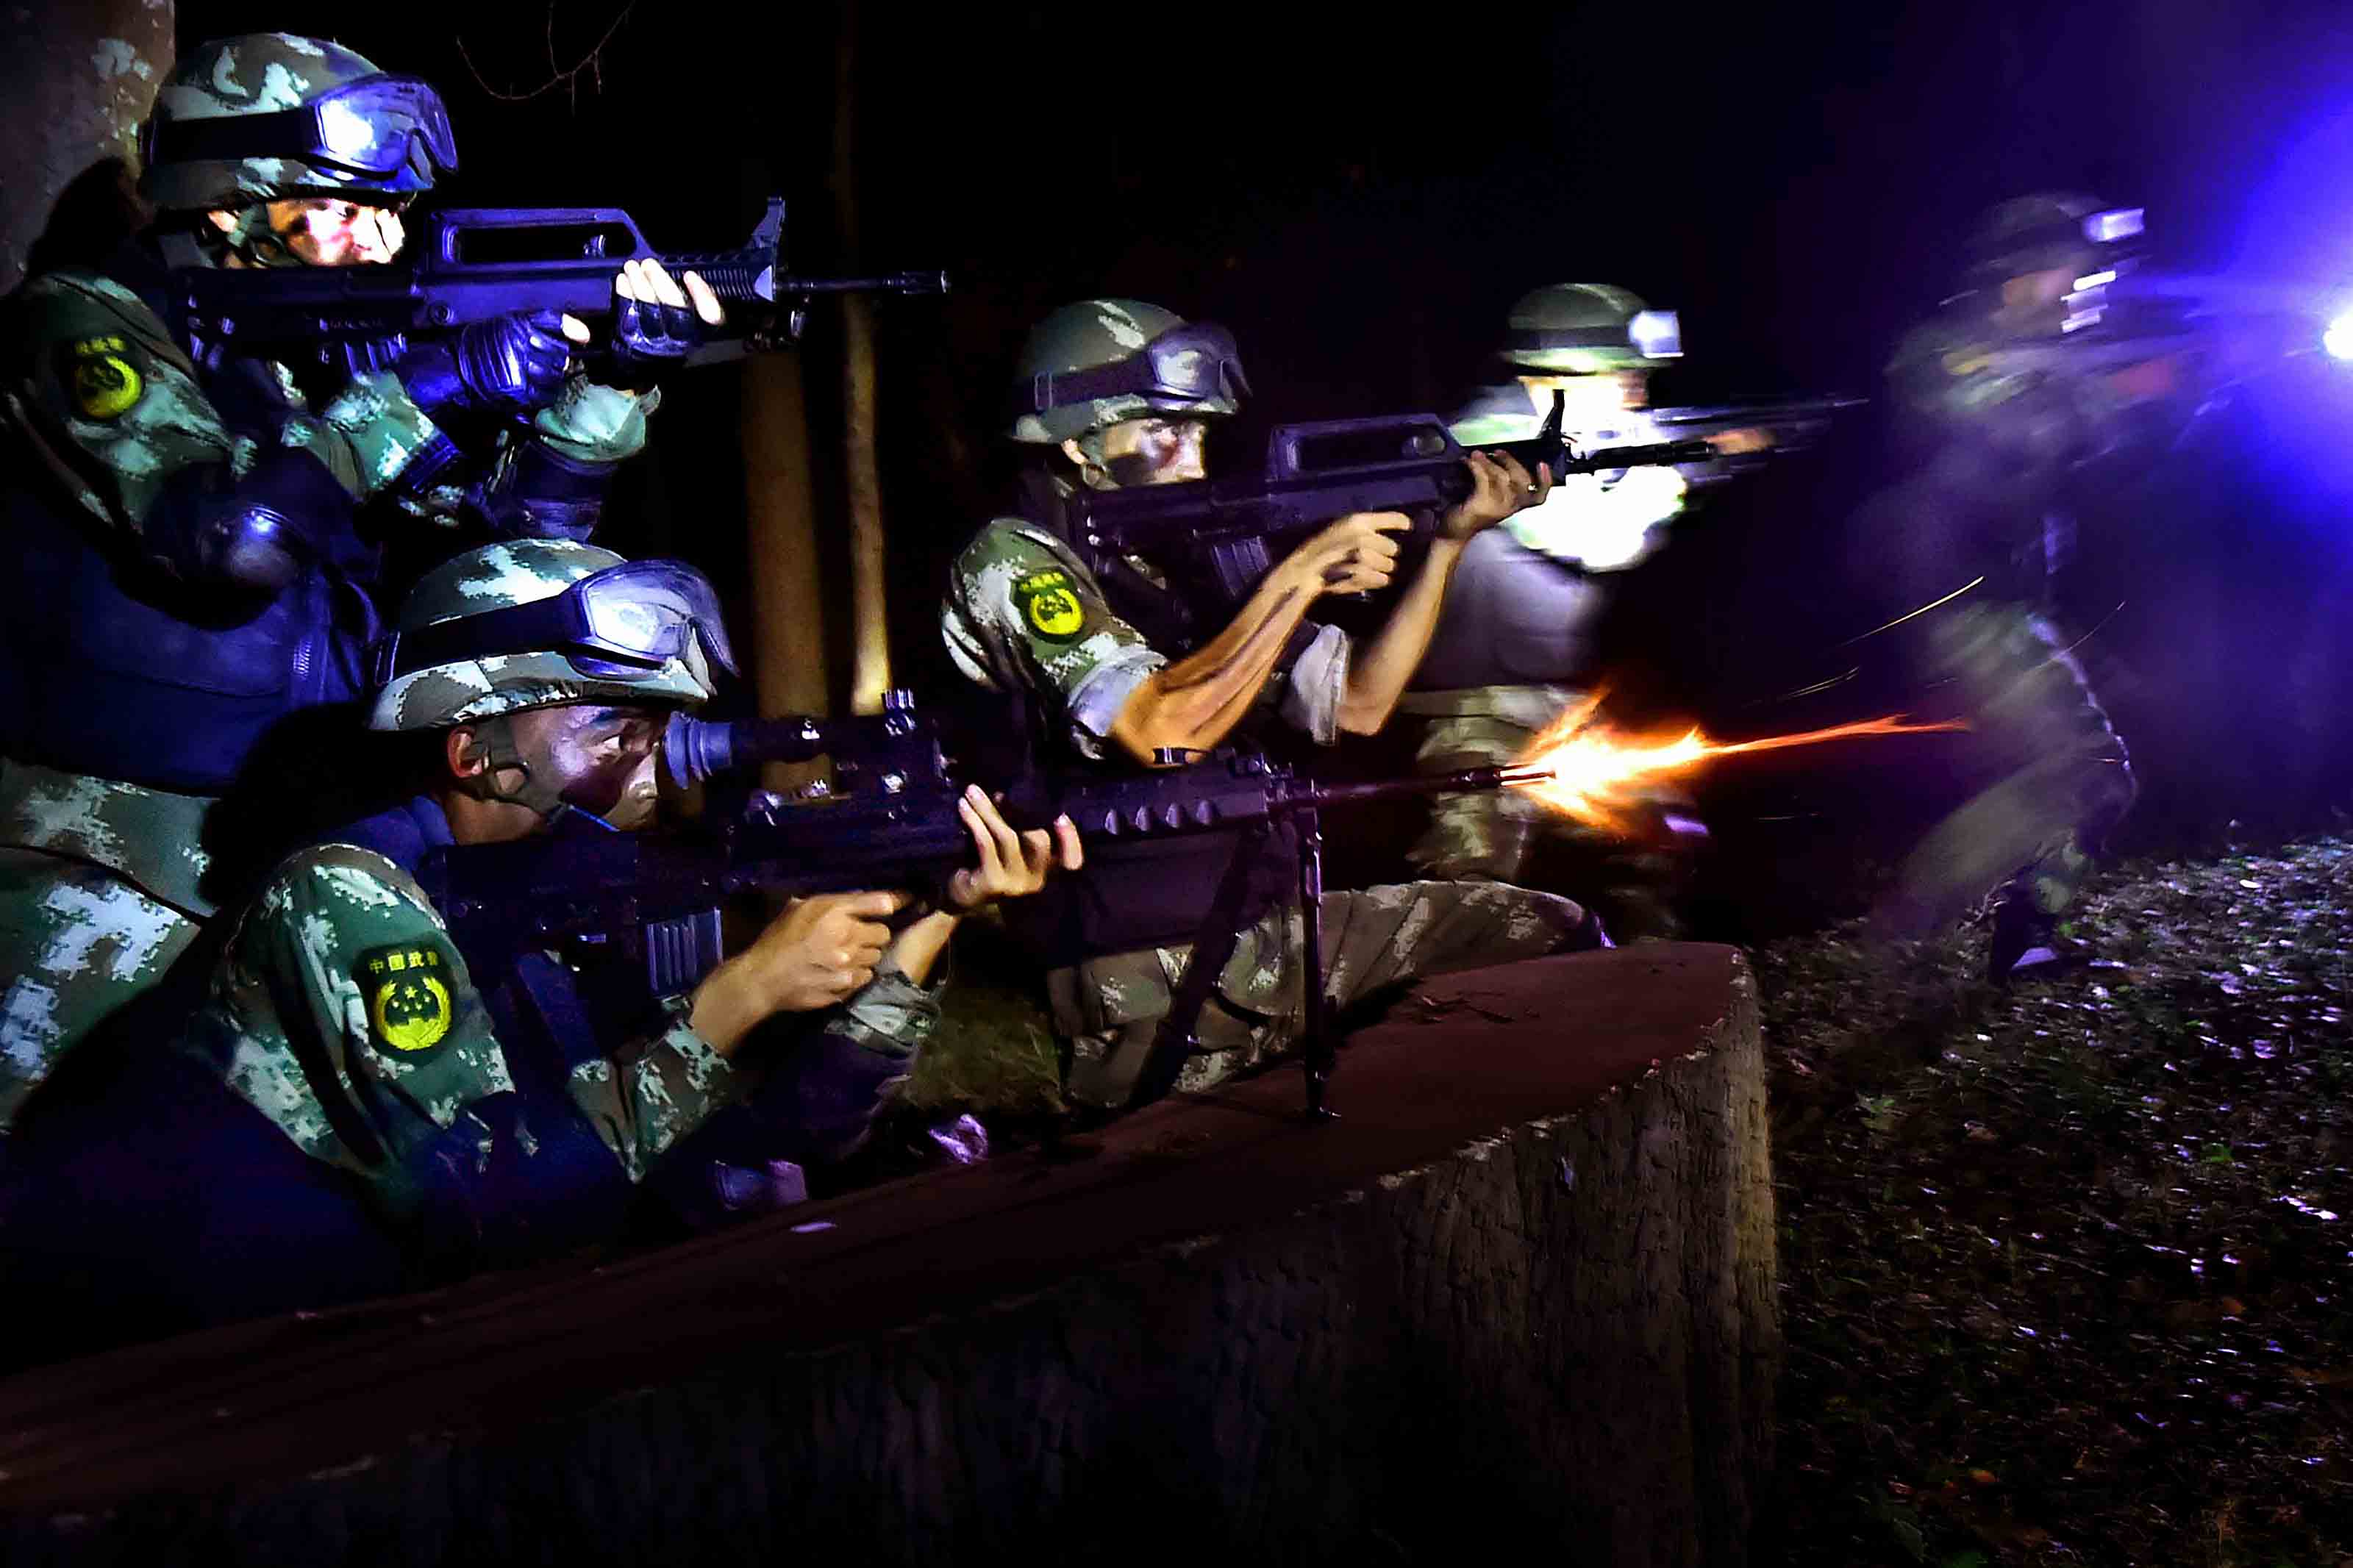 武警夜间训练图片图片